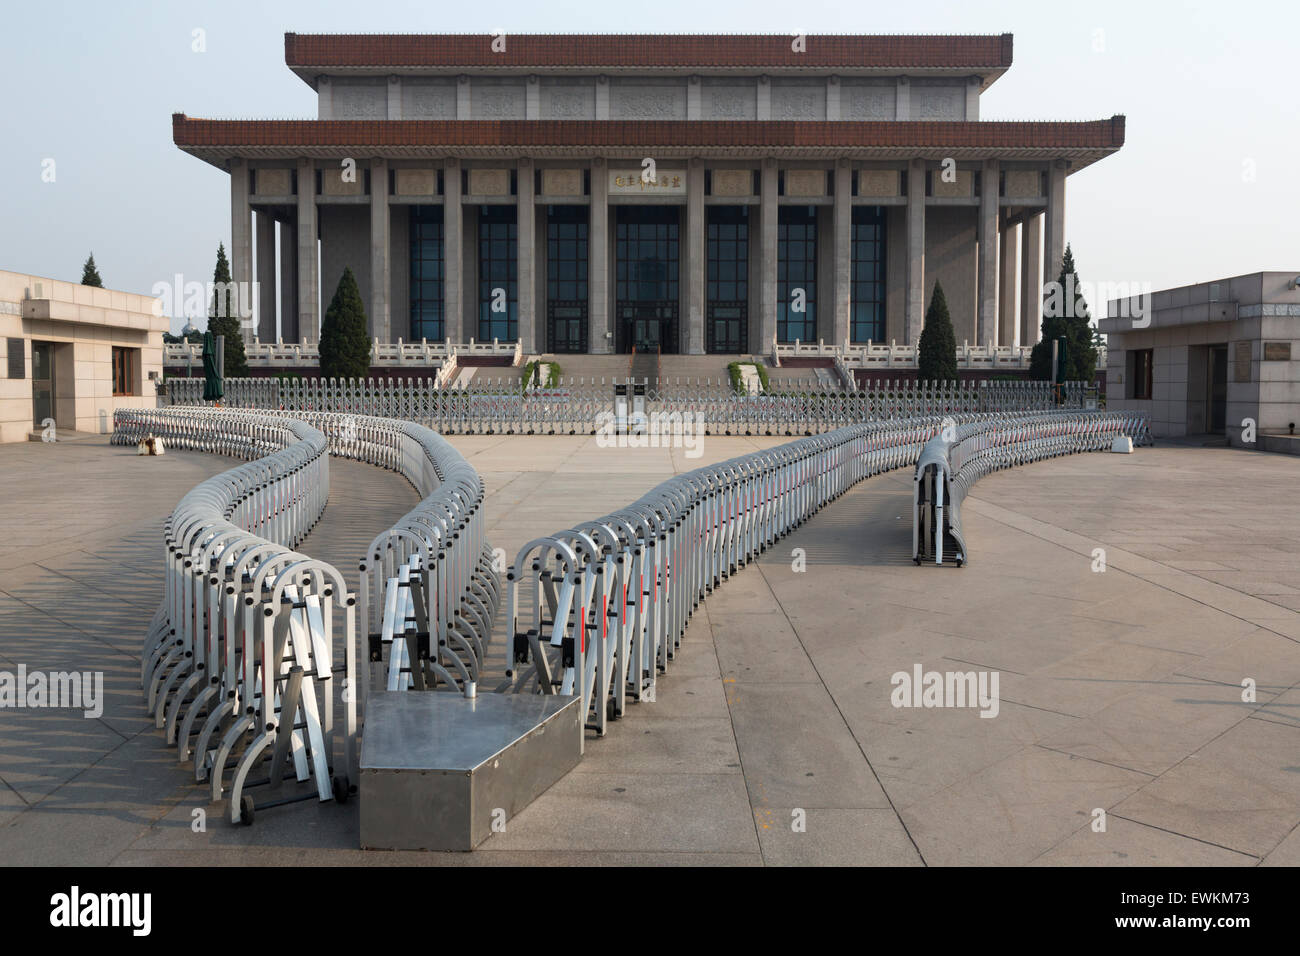 Mausolée de Mao Zedong (Mao Memorial Hall) de la Place Tiananmen, à Beijing Banque D'Images